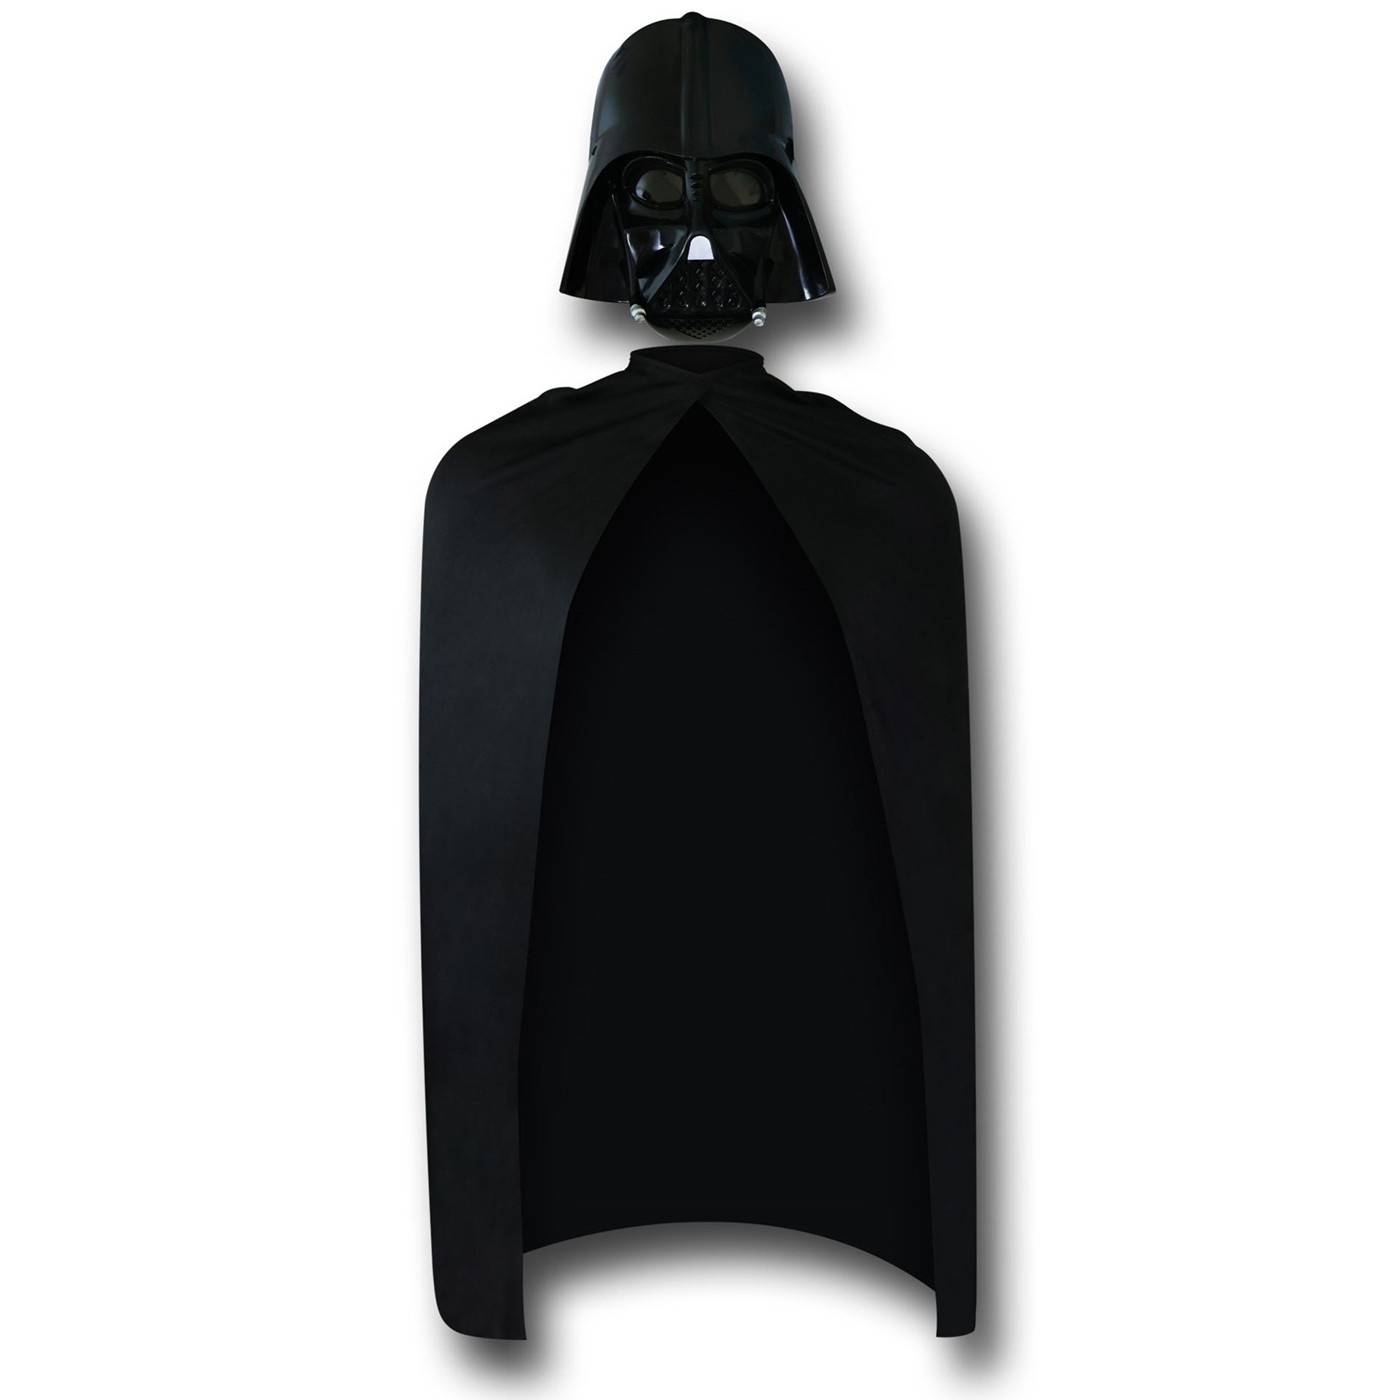 Star Wars Darth Vader Mask & Cape Set